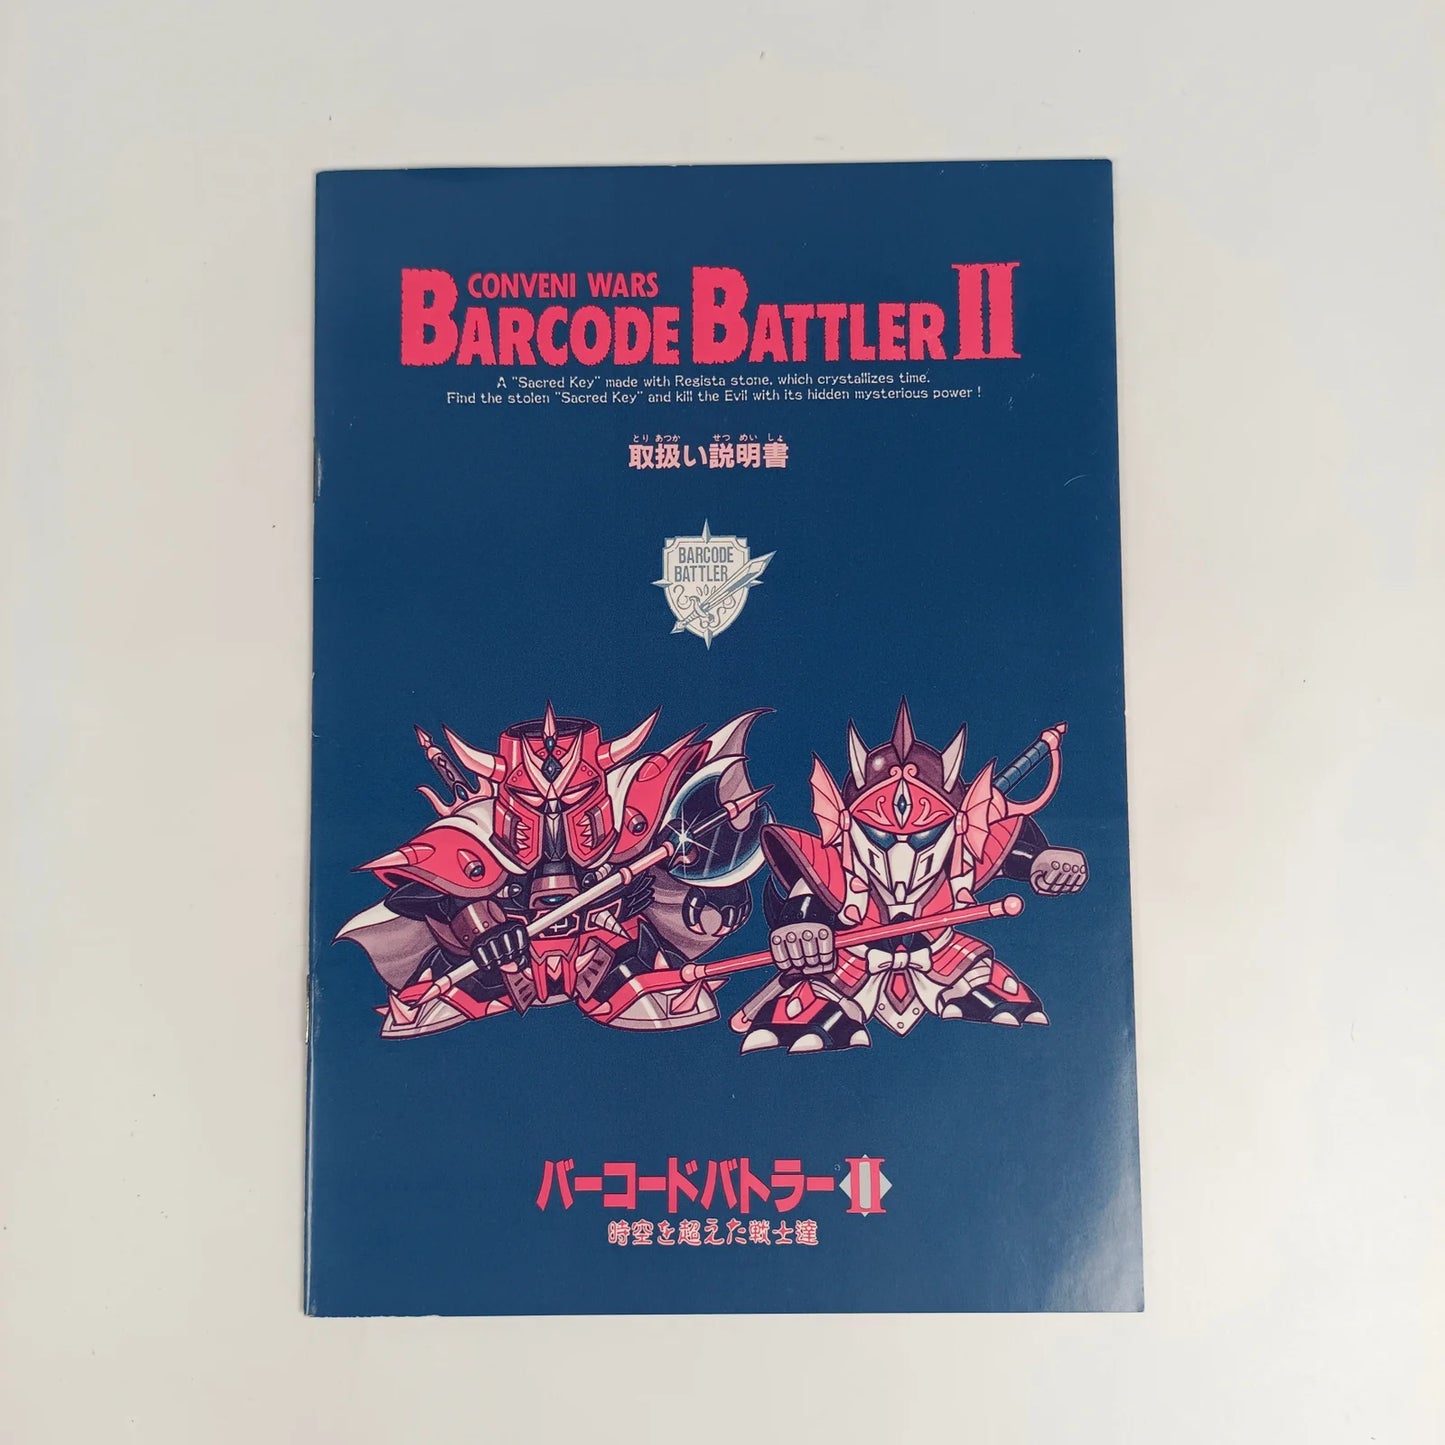 Barcode Battler II